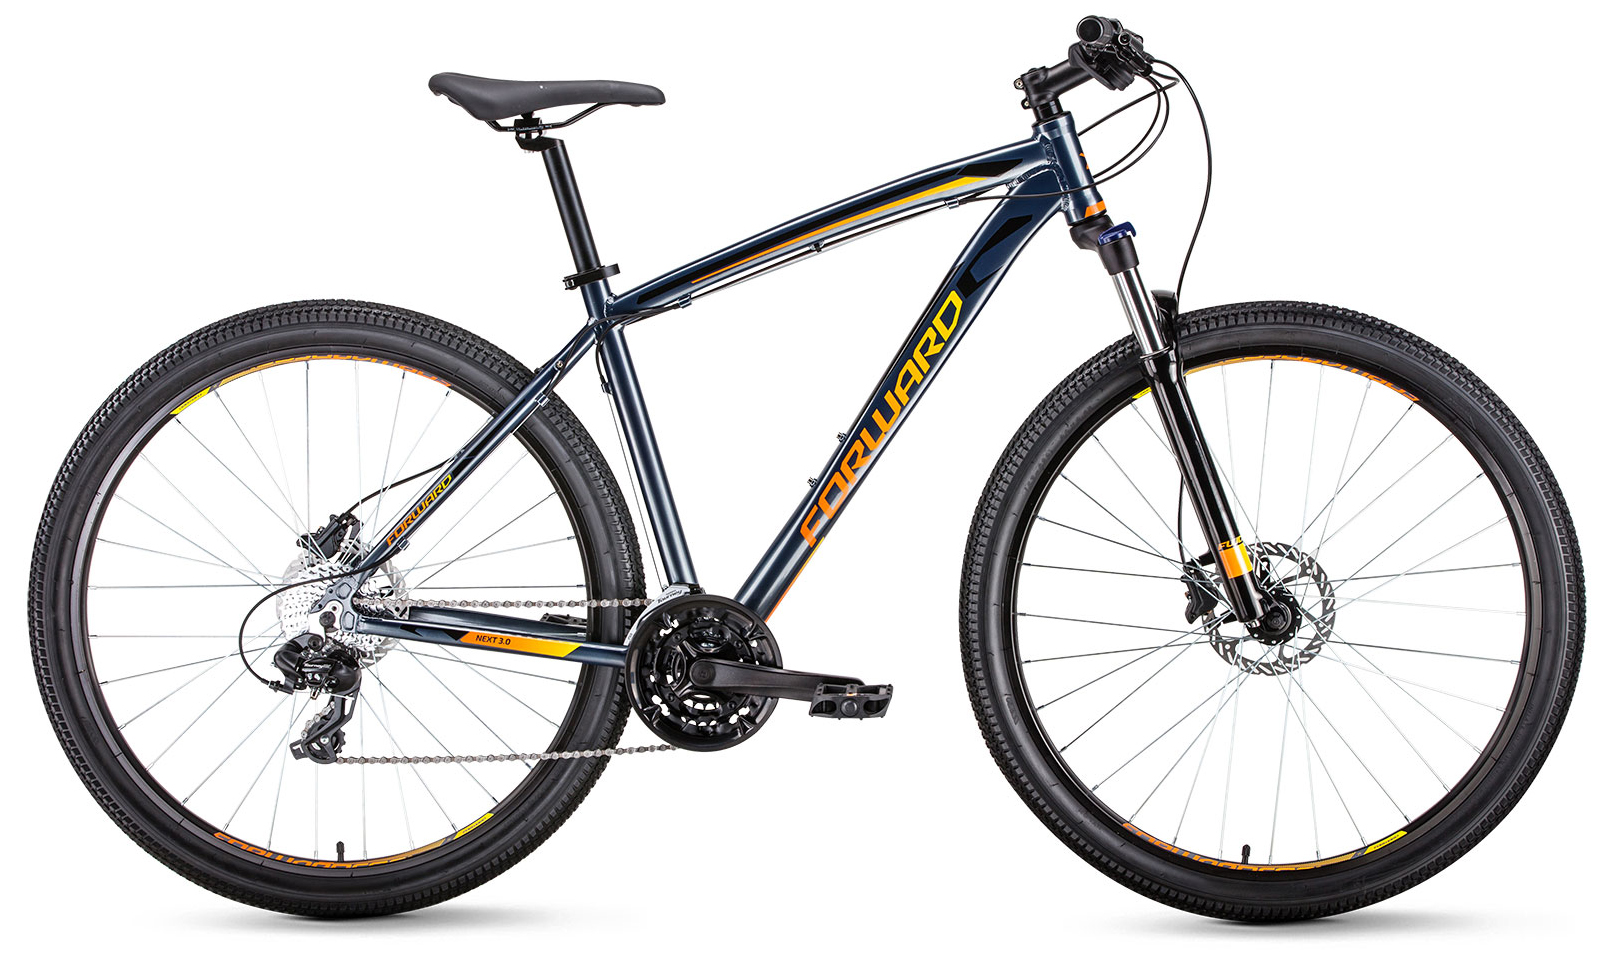  Отзывы о Горном велосипеде Forward горный велосипед Forward Next 29 3.0 Disc 2020 2020